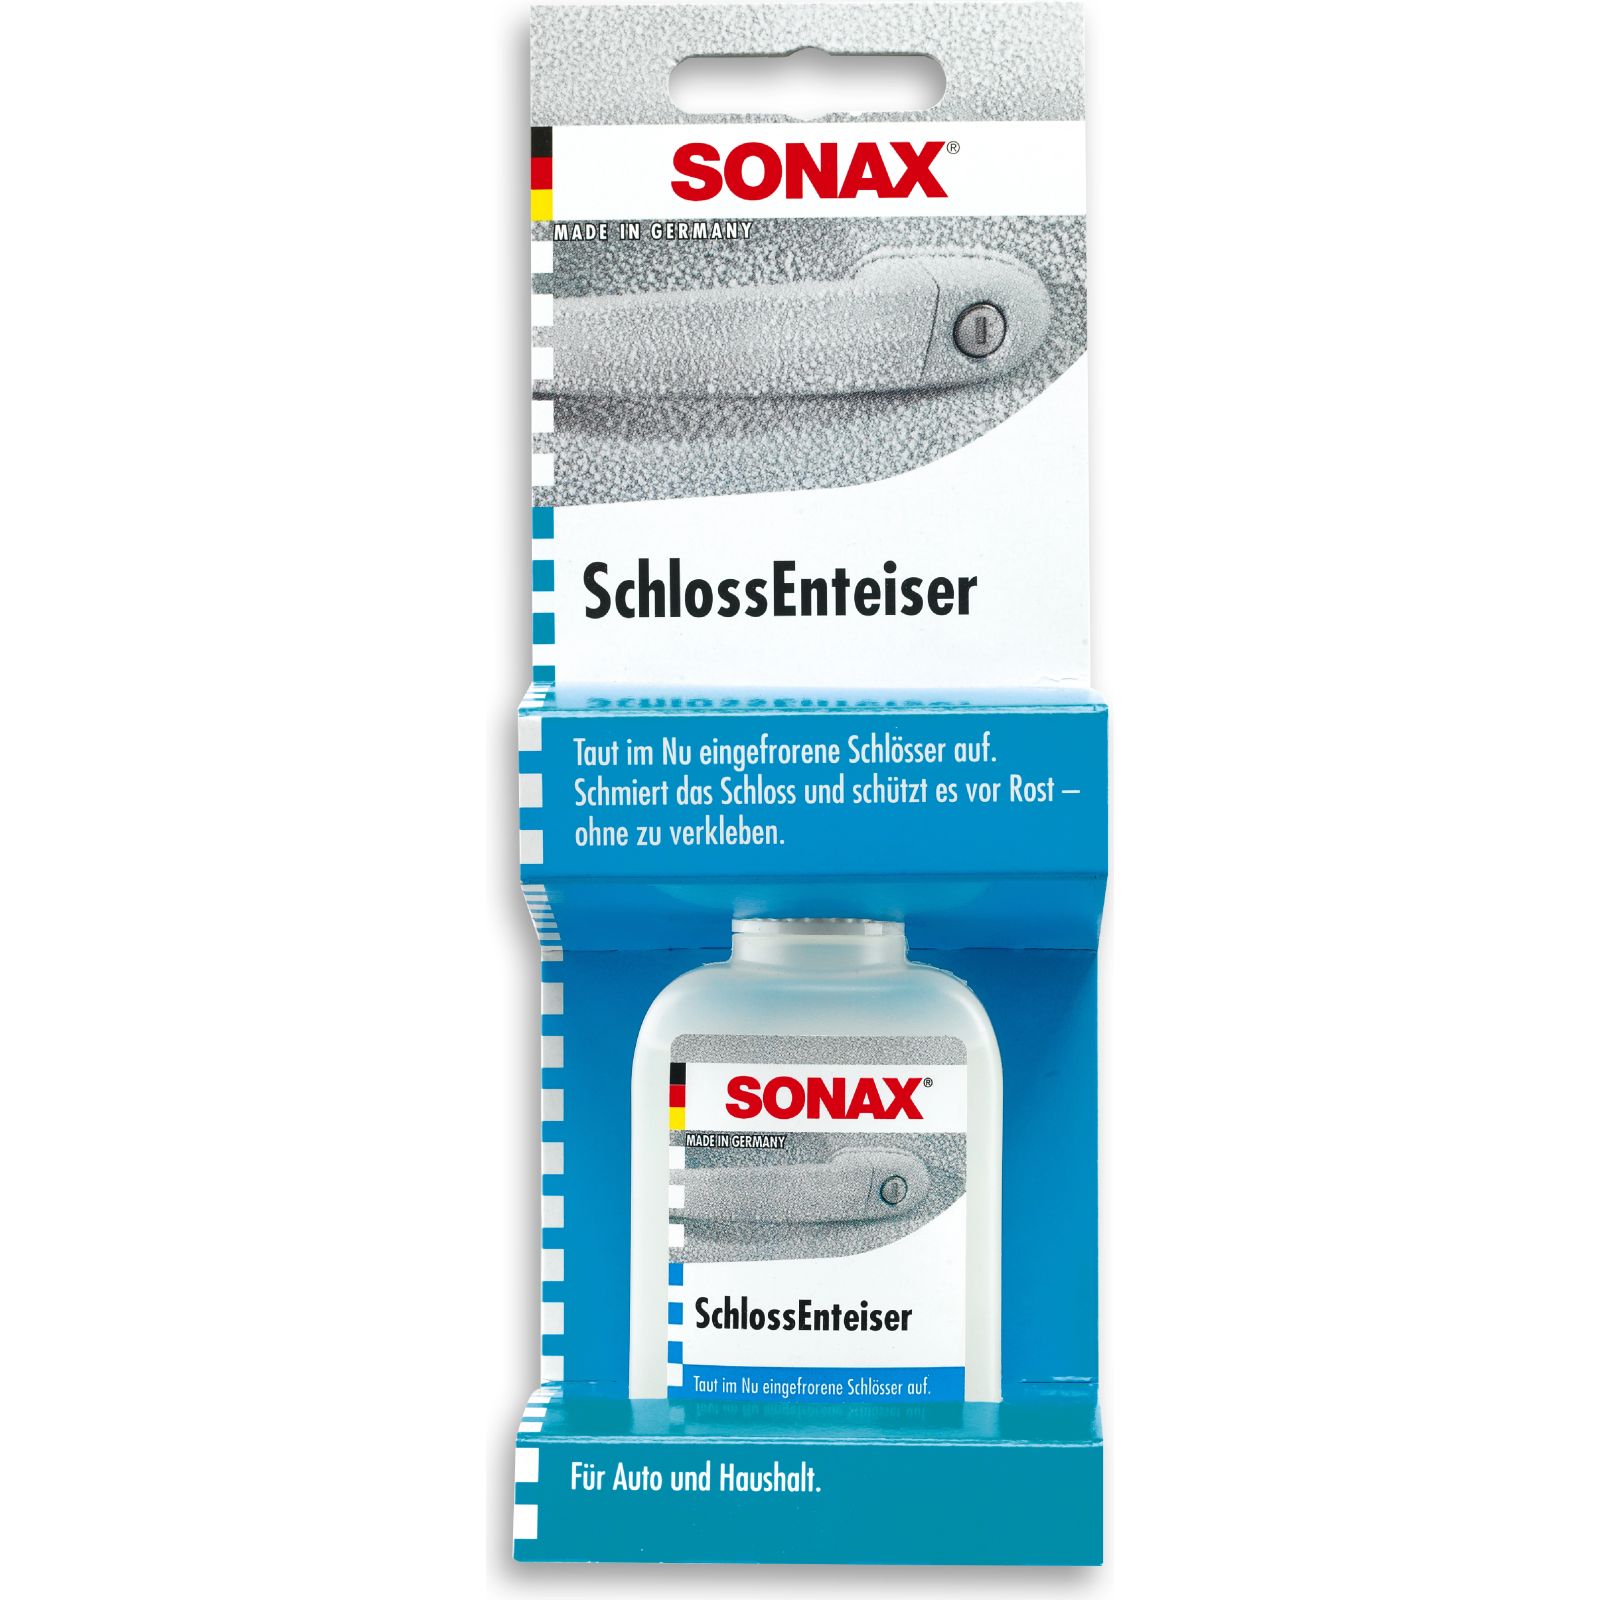 SONAX, SchlossEnteiser 50ml